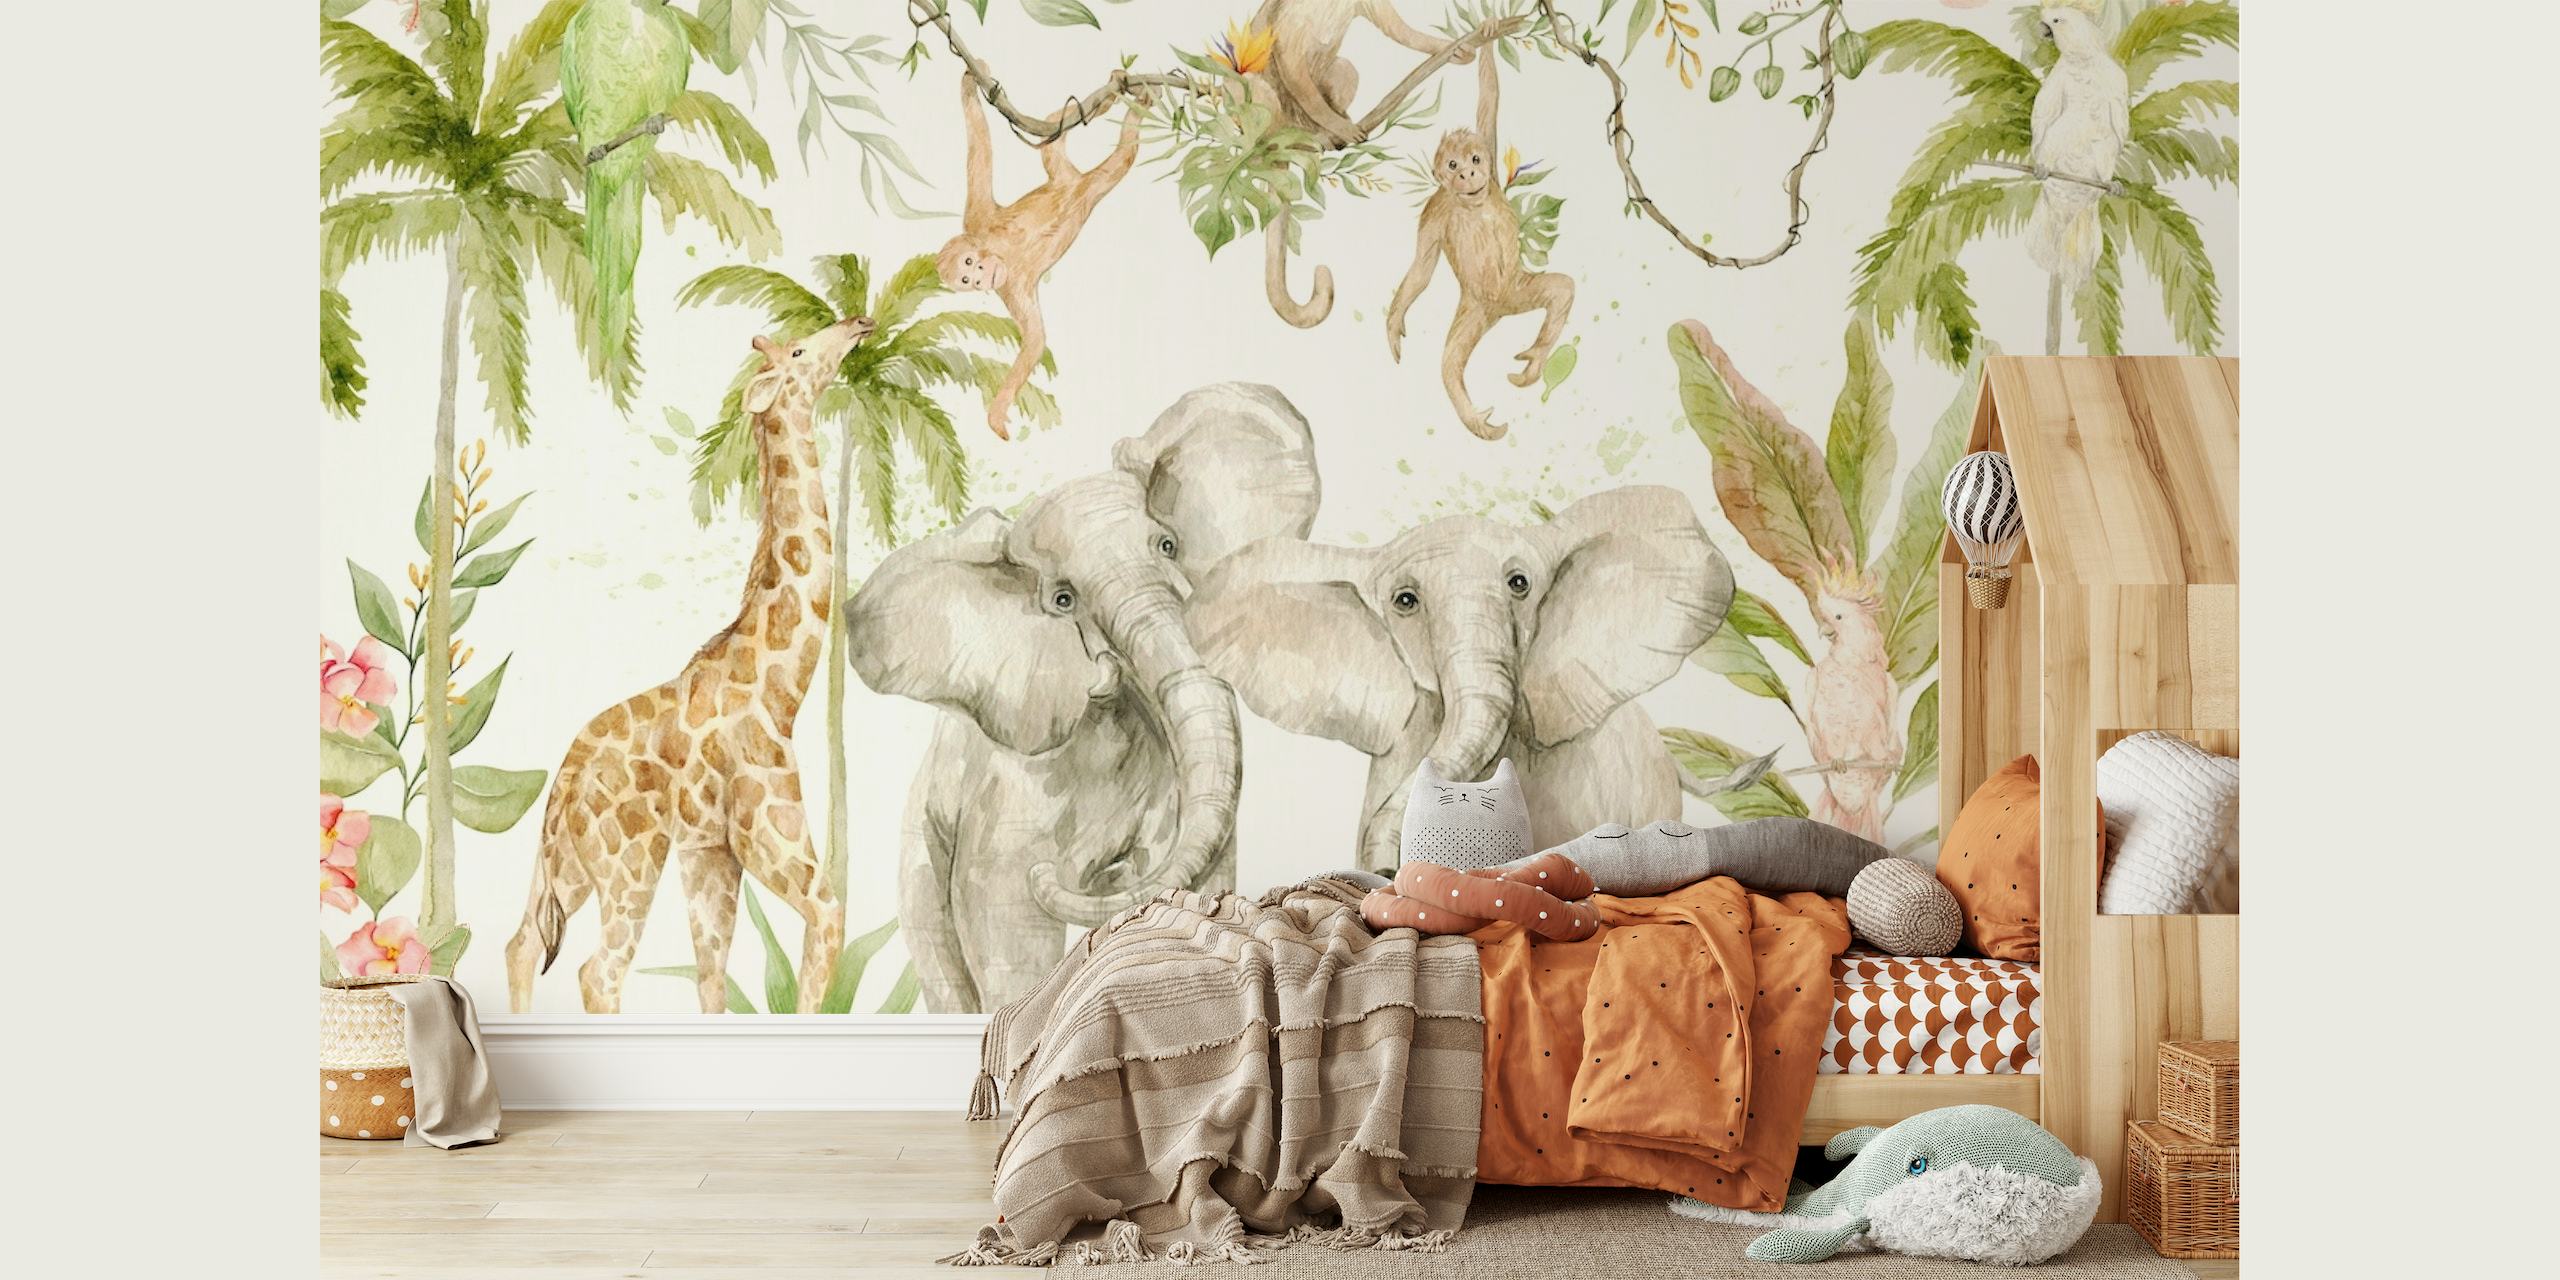 Ręcznie malowana fototapeta przedstawiająca scenę tropikalnego safari w dżungli ze słoniami, żyrafami i małpami pośród zieleni